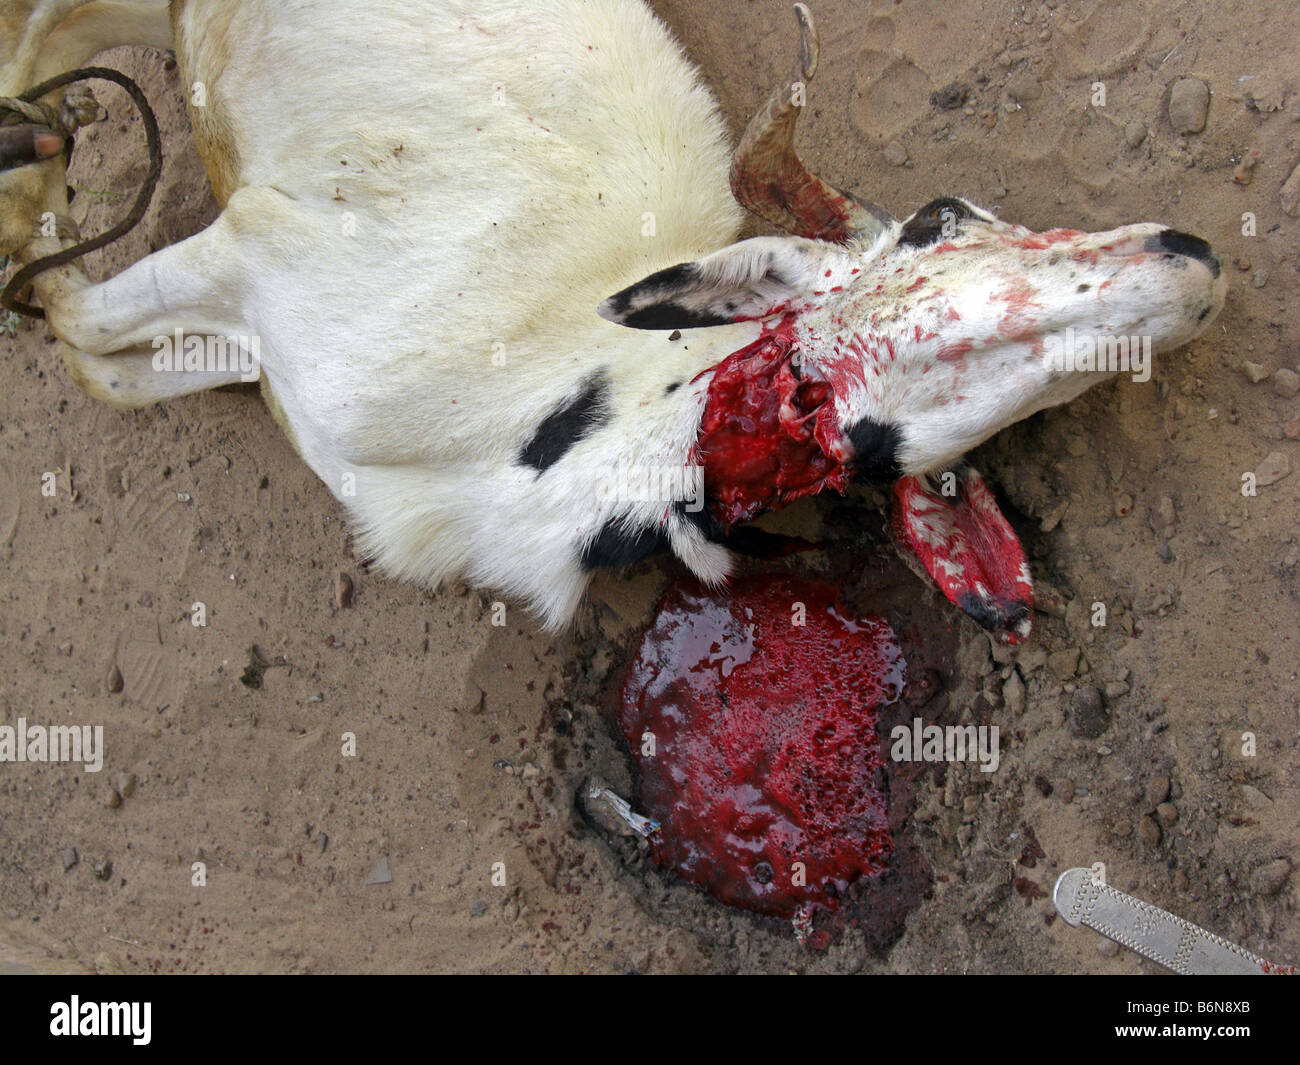 Tabaski ou l'Aïd Al Adha. L'abattage d'une chèvre dans un sacrifice rituel.La Gambie, Afrique de l'Ouest. Banque D'Images